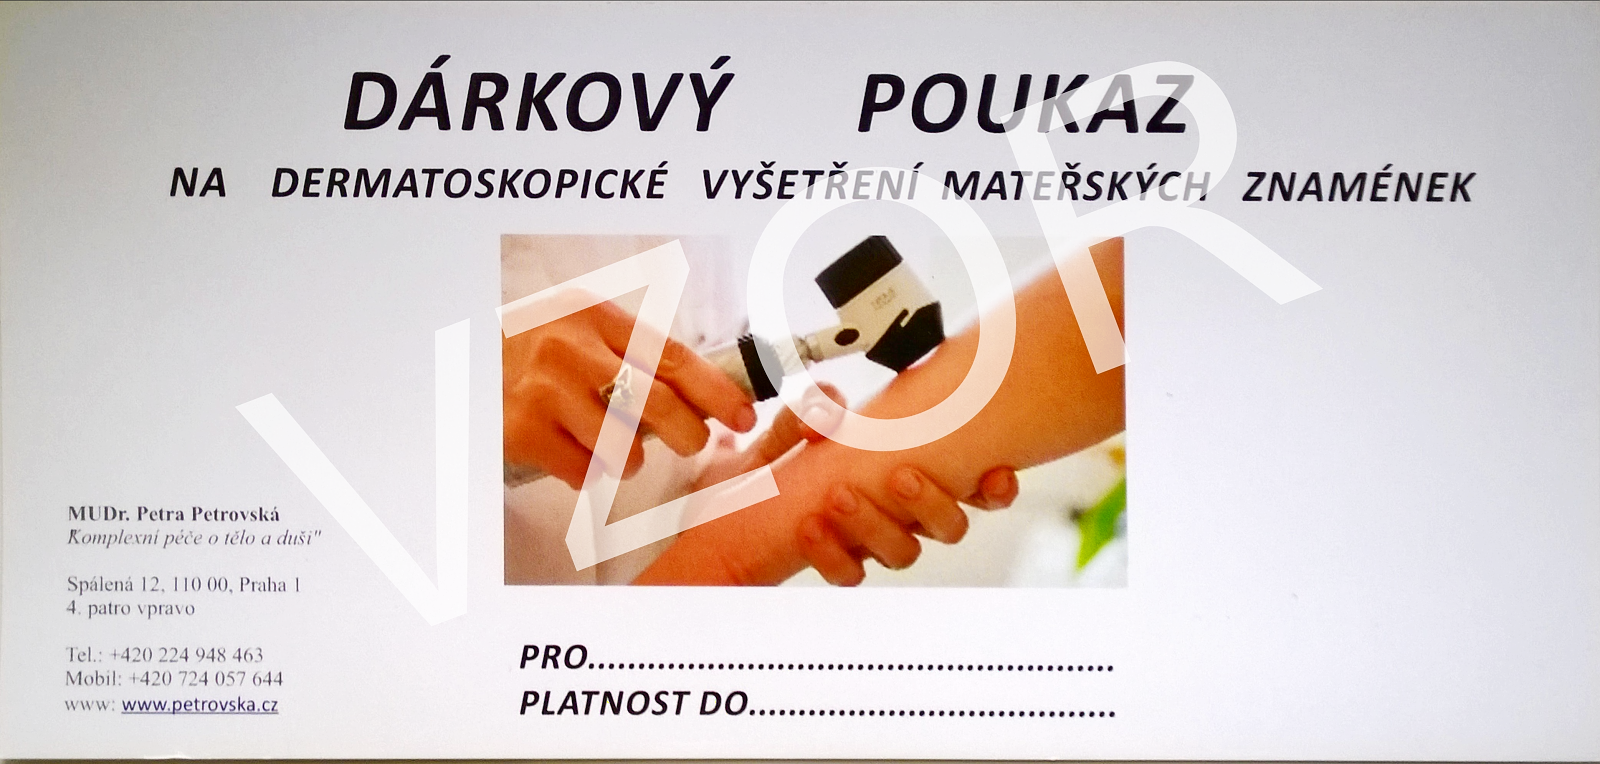 Dermatologie Petrovská nabízí dárkové poukazy na vyšetření mateřských znamének digitálním dermatoskopem.